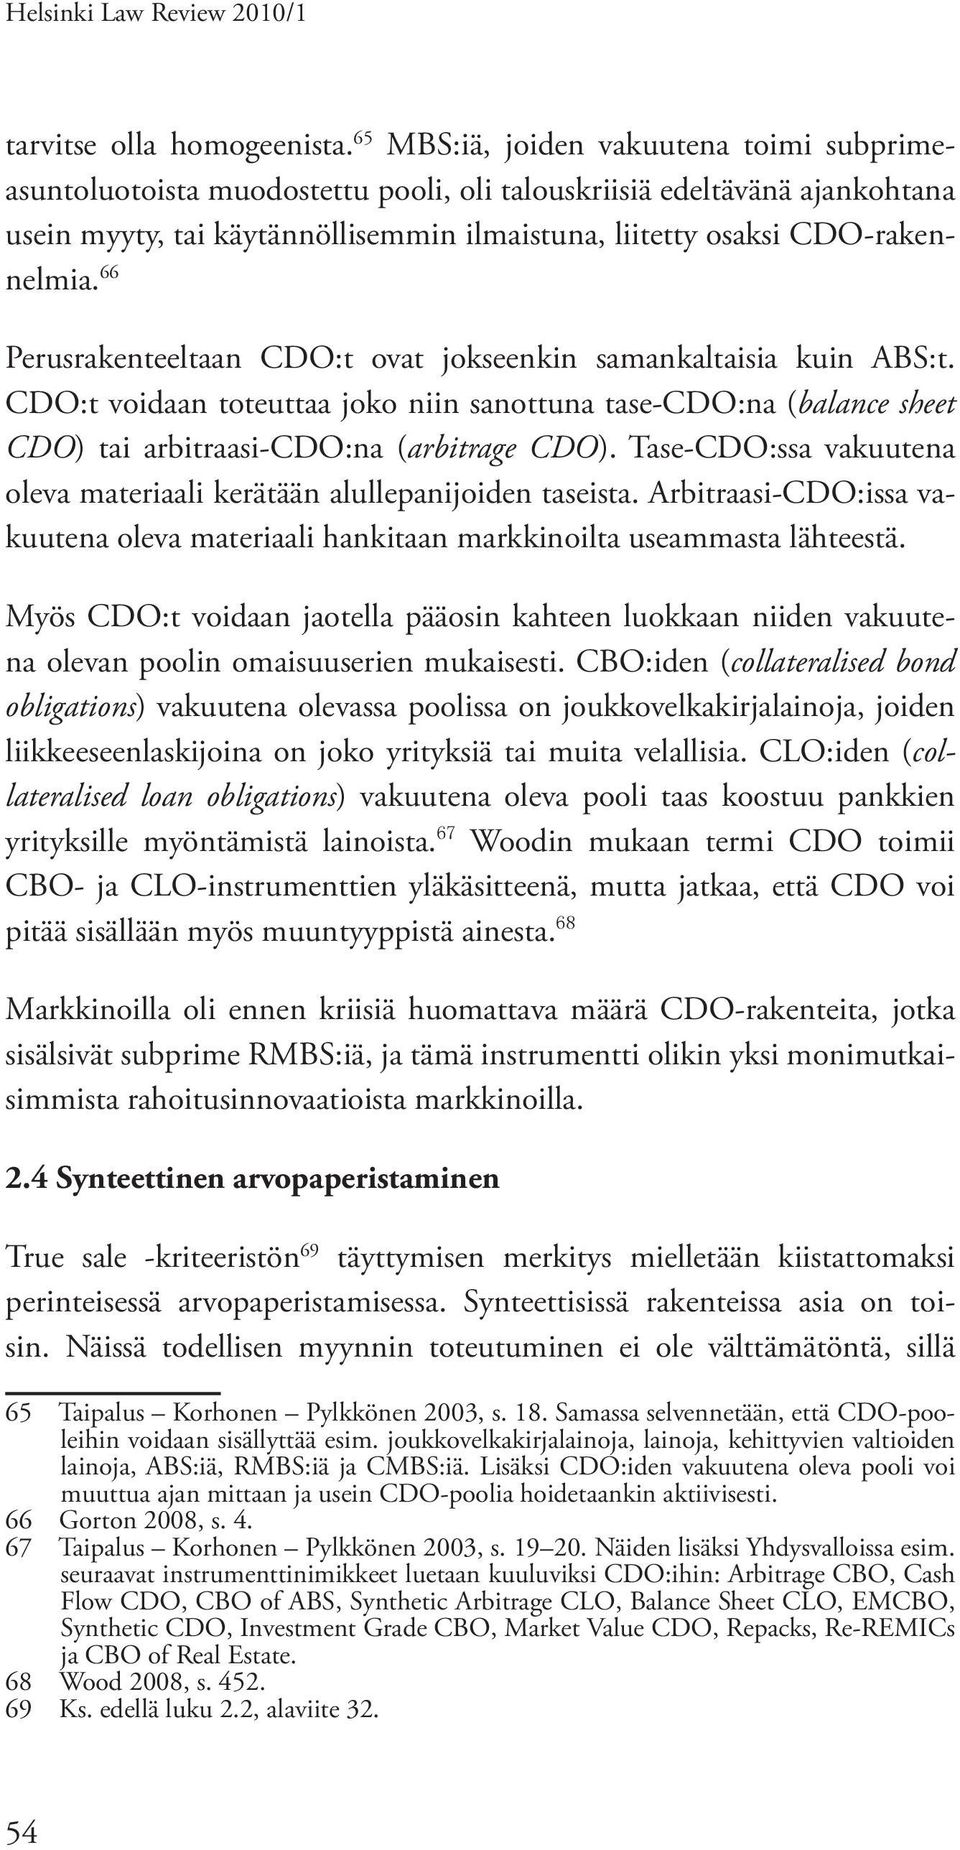 66 Perusrakenteeltaan CDO:t ovat jokseenkin samankaltaisia kuin ABS:t. CDO:t voidaan toteuttaa joko niin sanottuna tase-cdo:na (balance sheet CDO) tai arbitraasi-cdo:na (arbitrage CDO).